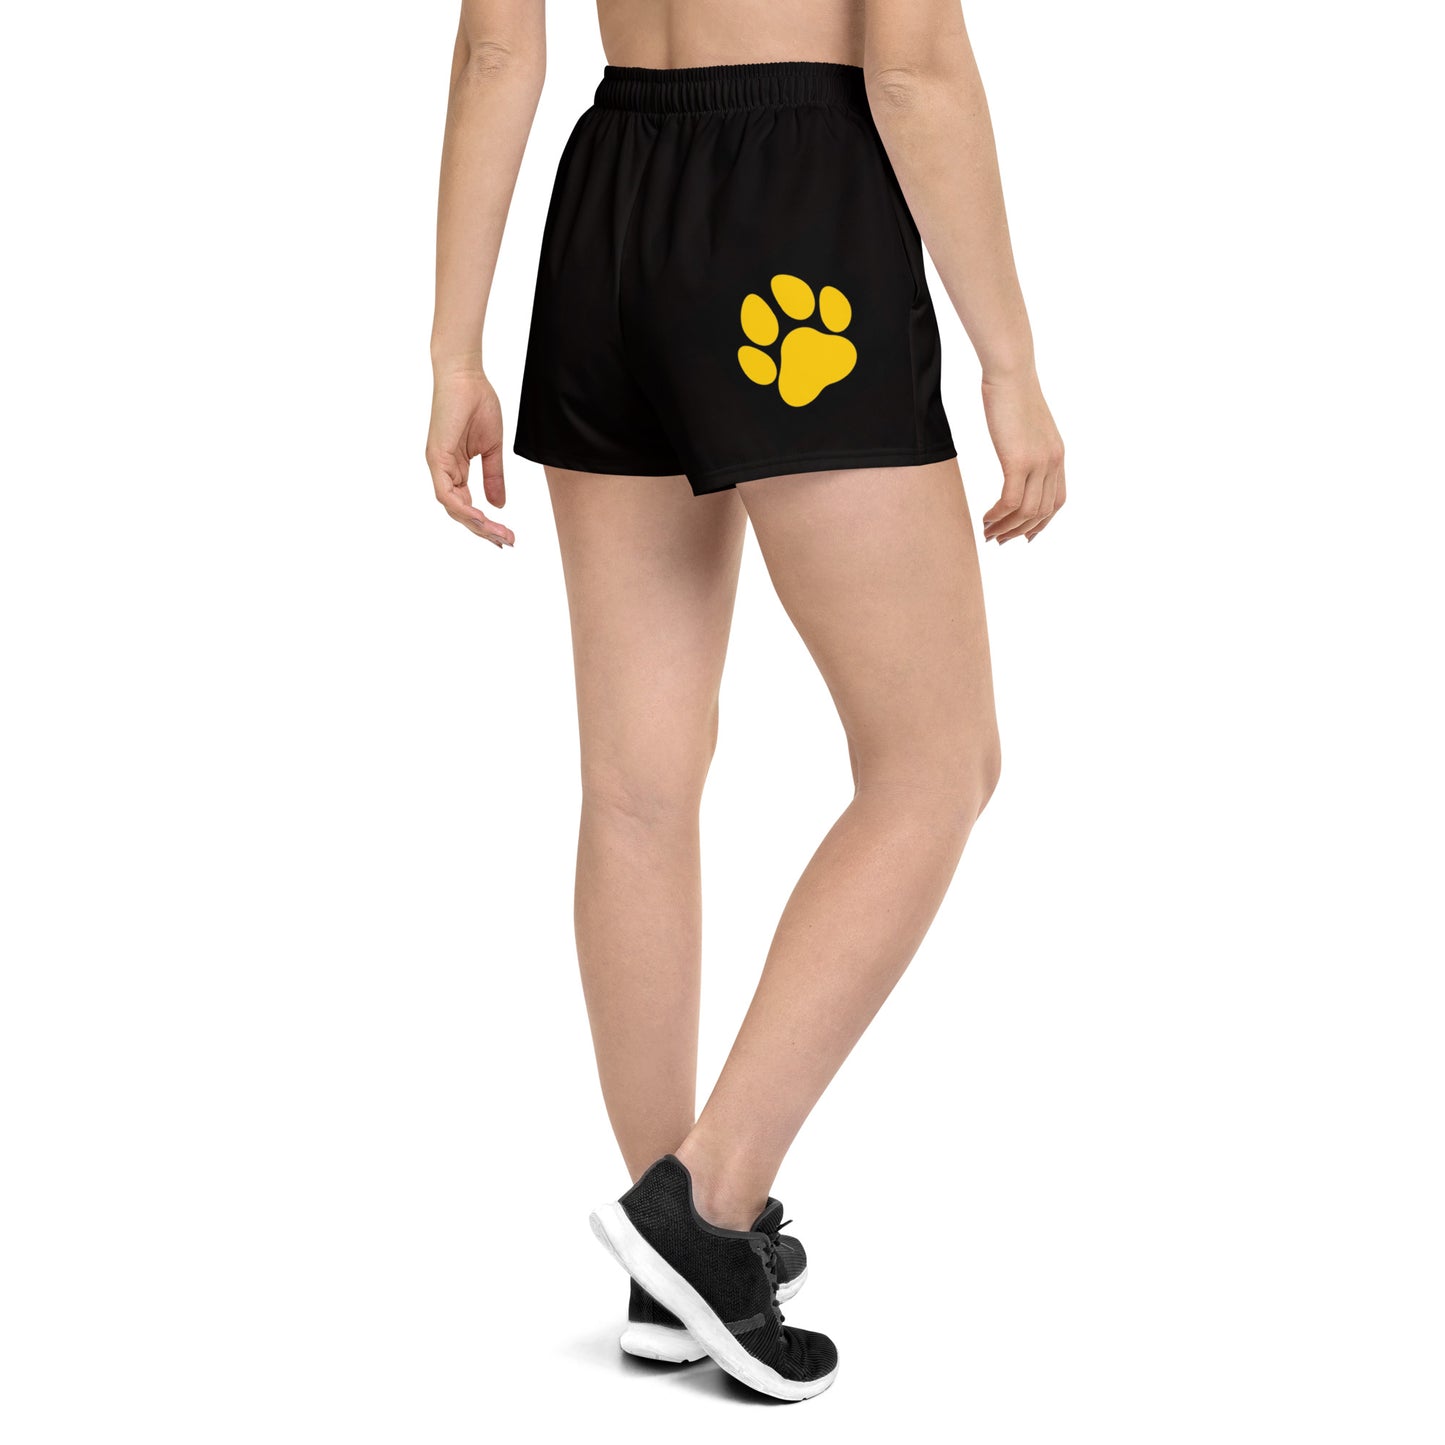 Black R7_Dawg - Women's Athletic Shorts